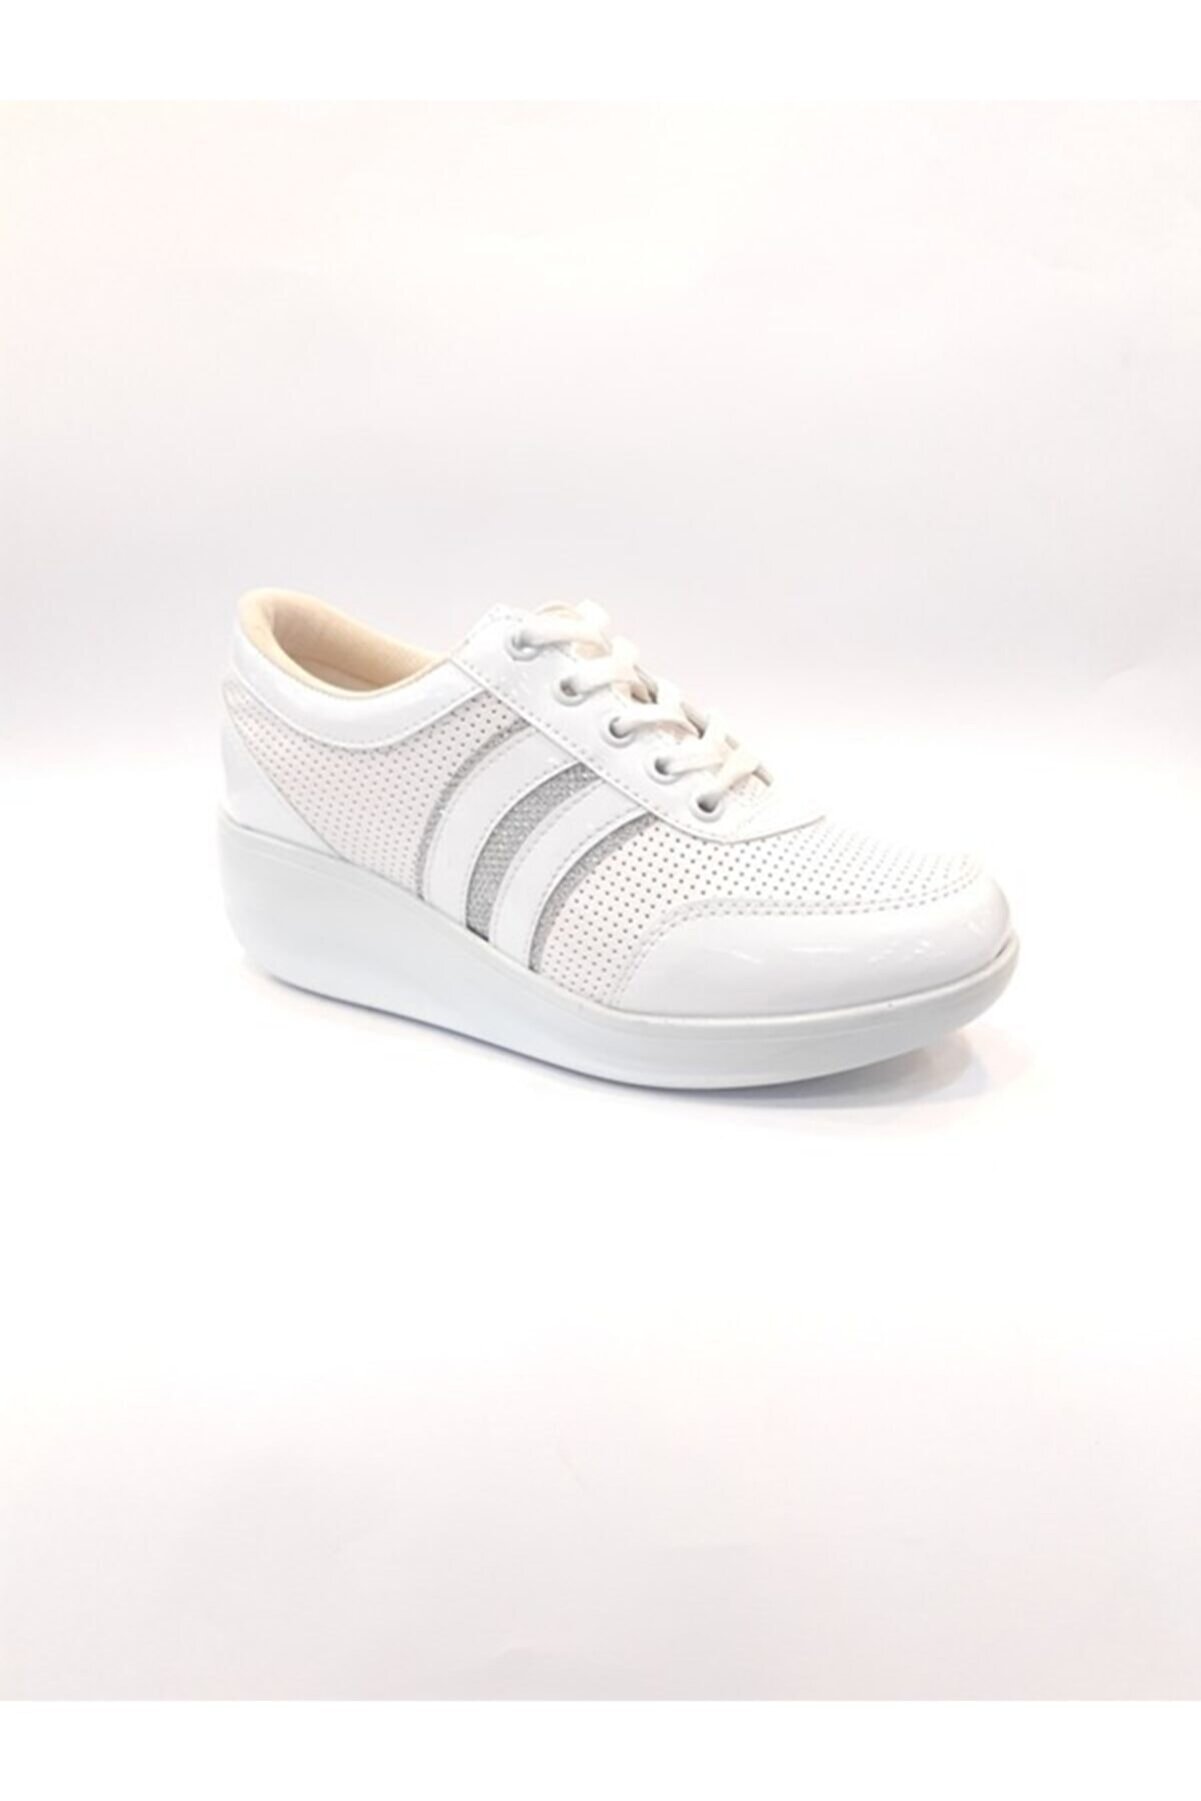 Dunlop Kadın Beyaz Dolgu Taban Günlük Yürüyüş Ayakkabısı